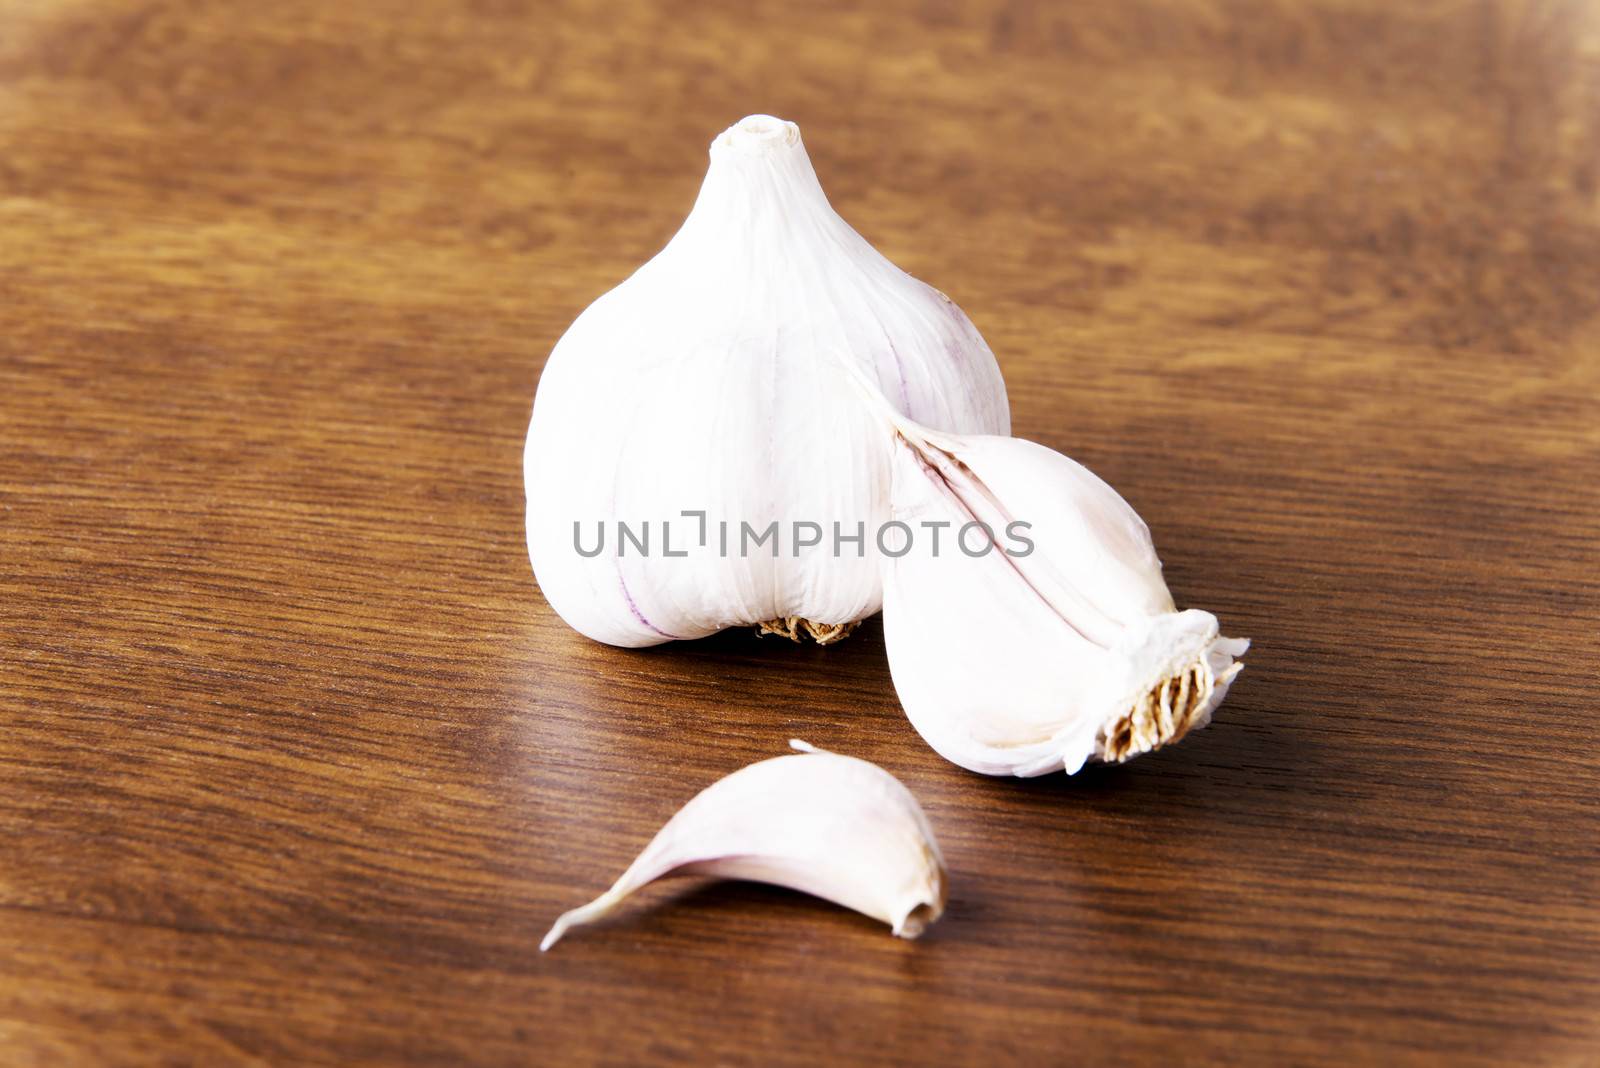 Fresh raw garlic lying on a wooden table.